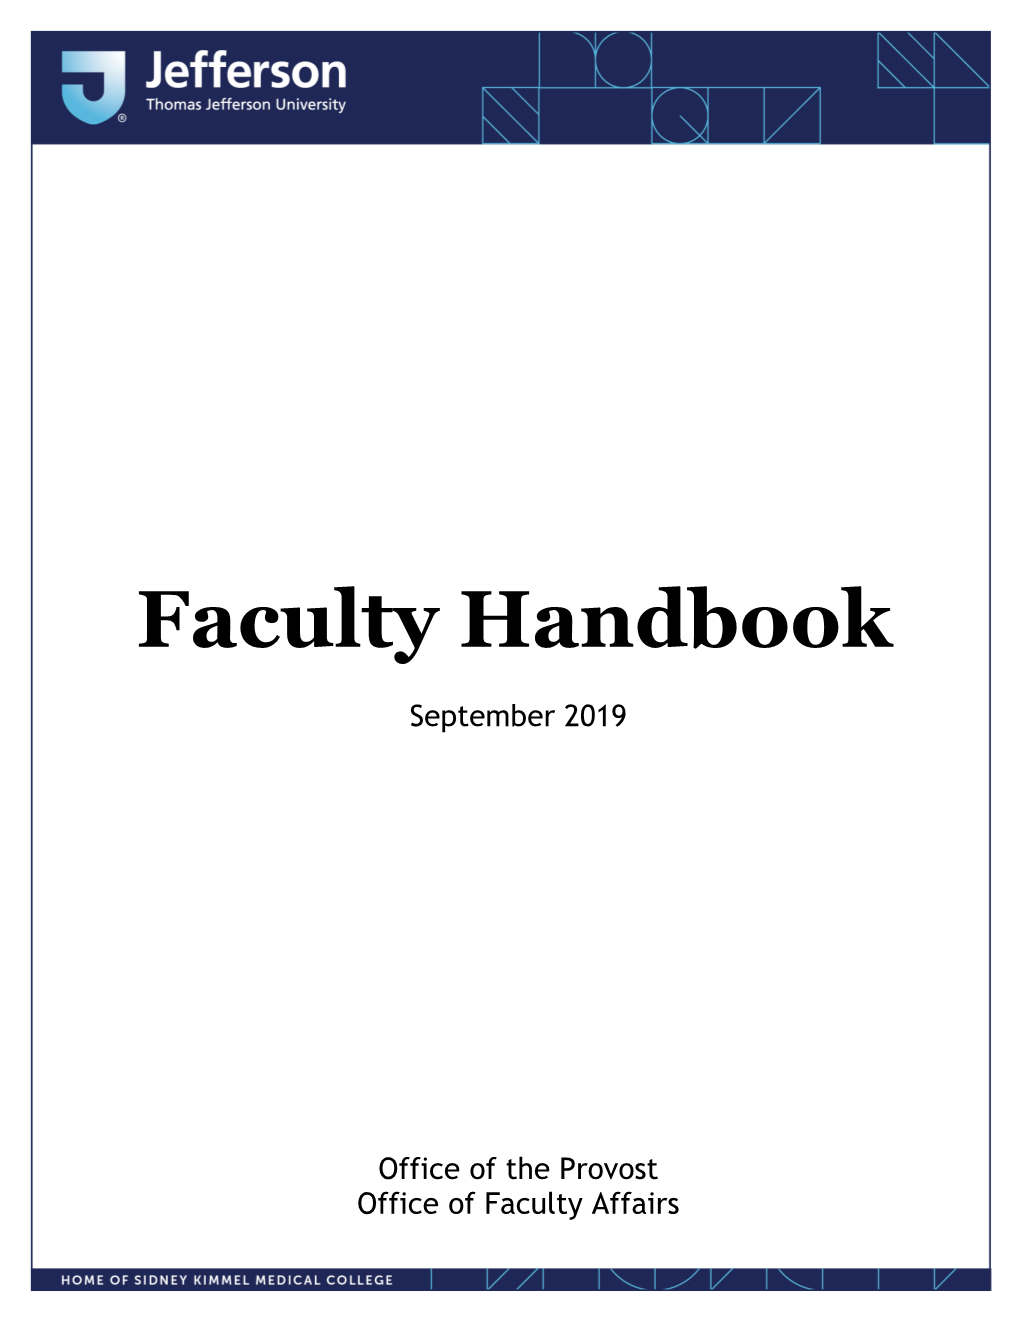 TJU Faculty Handbook